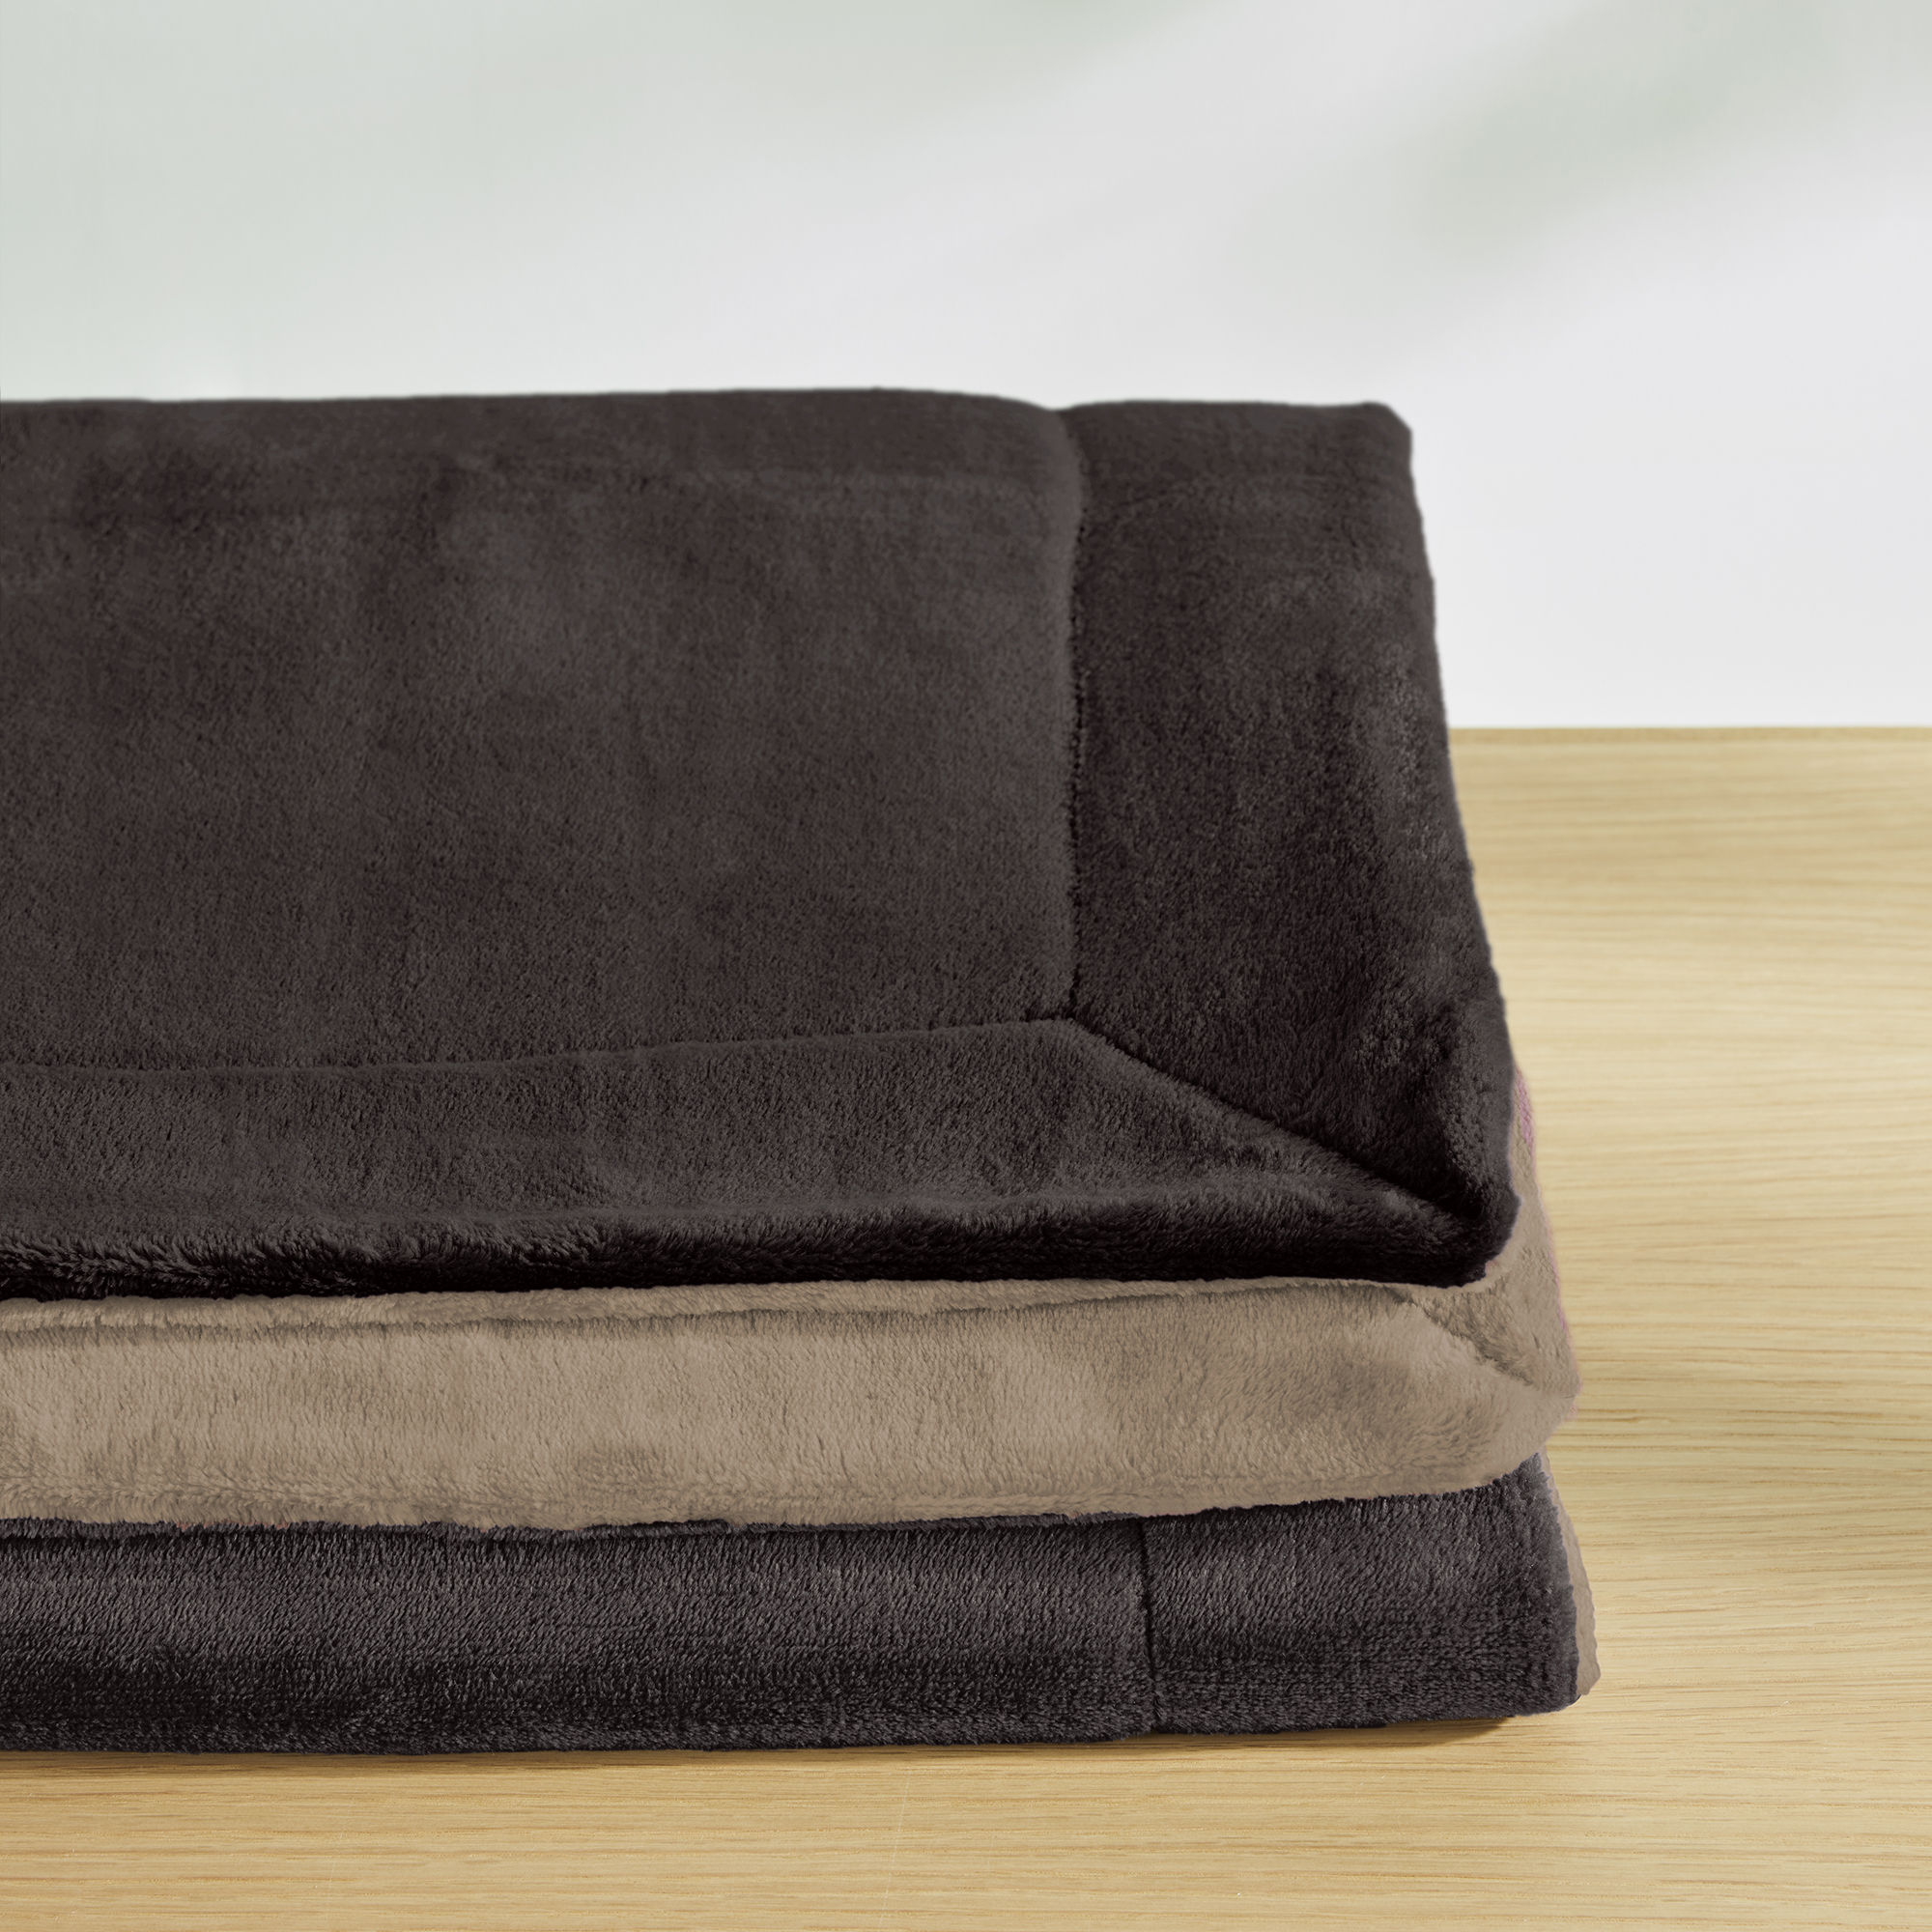 double soft Decke s.Oliver | braun/beige | 150 x 200 cm |  1280-150-200-350-026 | Kunstfaserdecken